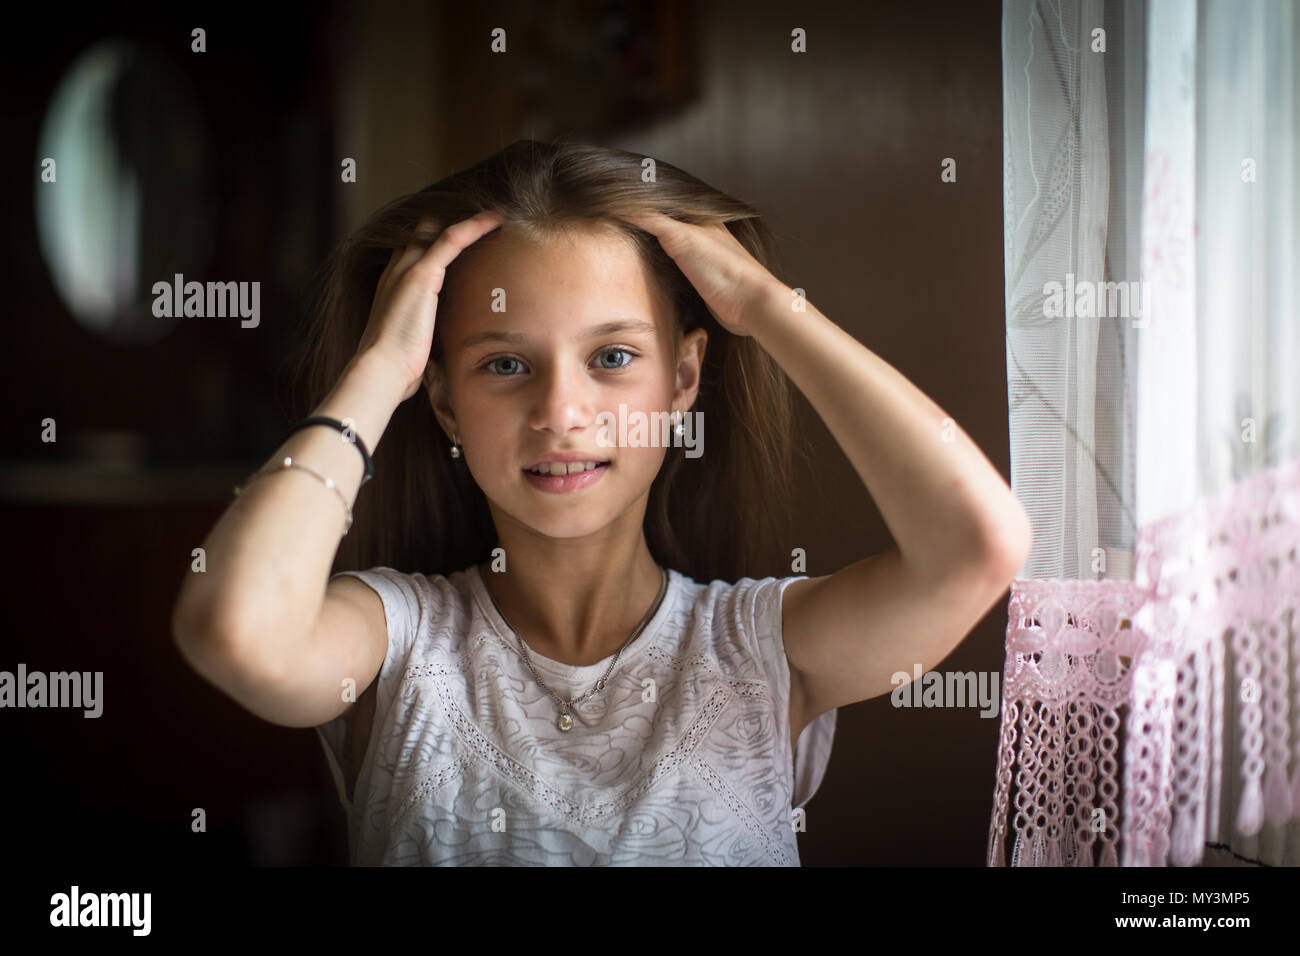 Süße 10 Jährige Mädchen Für Die Kamera Auf Den Tisch Stellen Stockfotografie Alamy